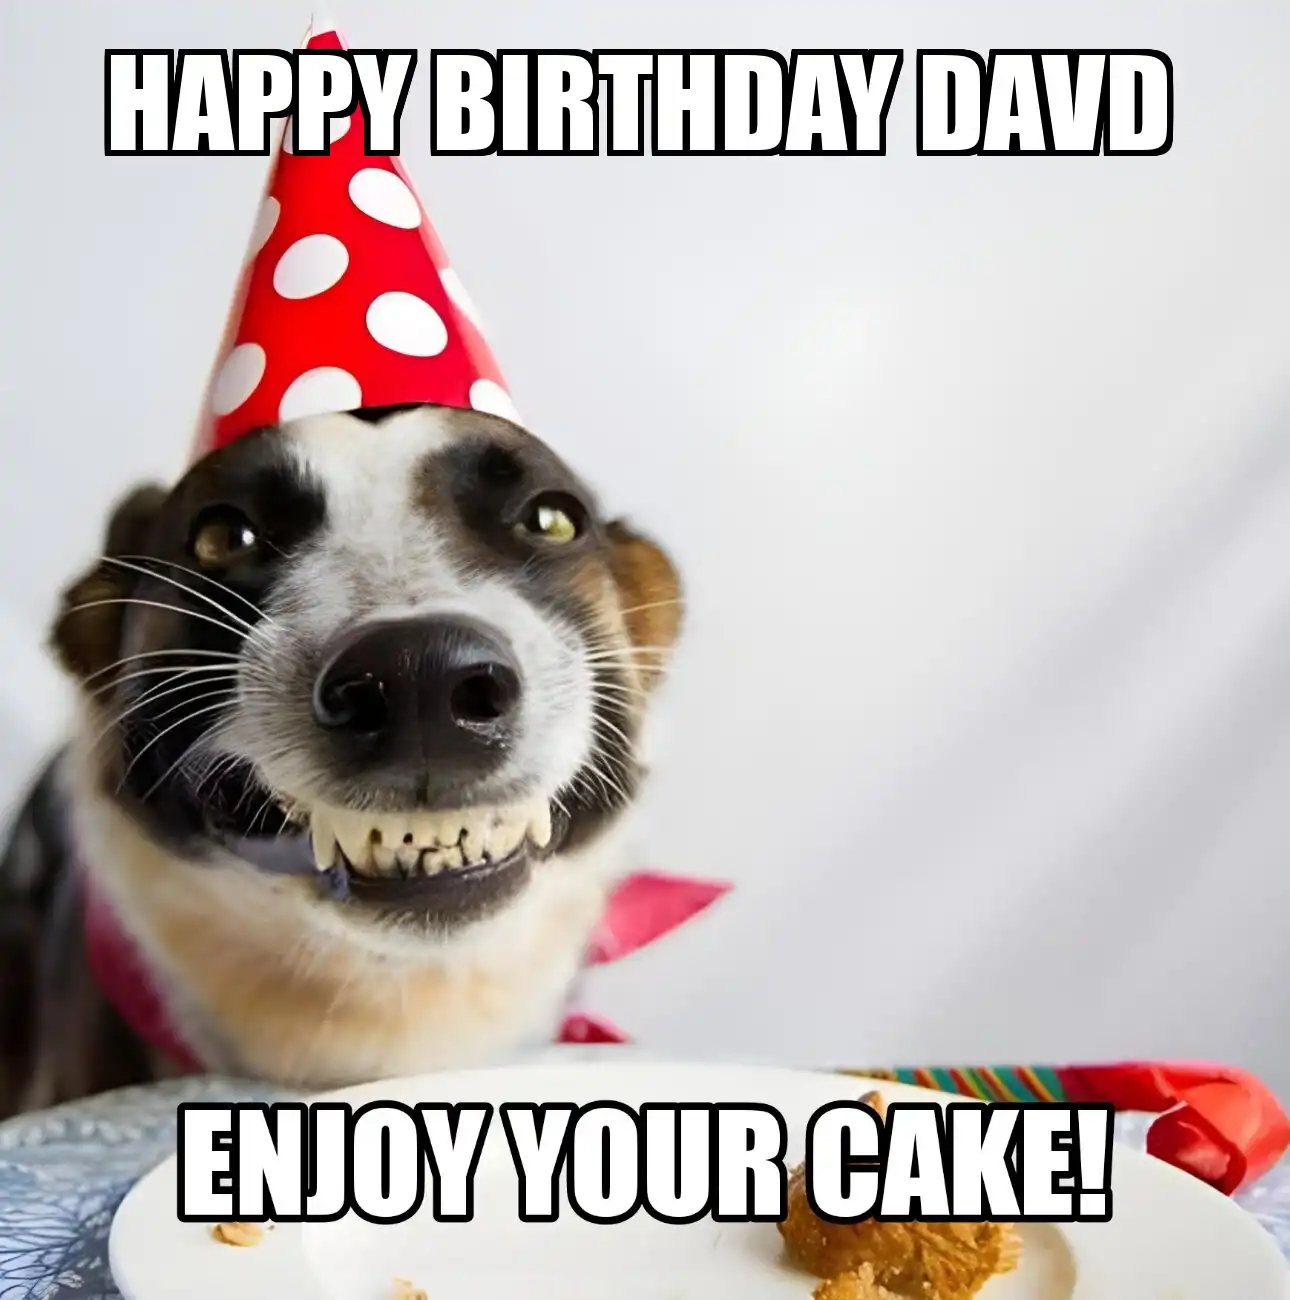 Happy Birthday Davd Enjoy Your Cake Dog Meme